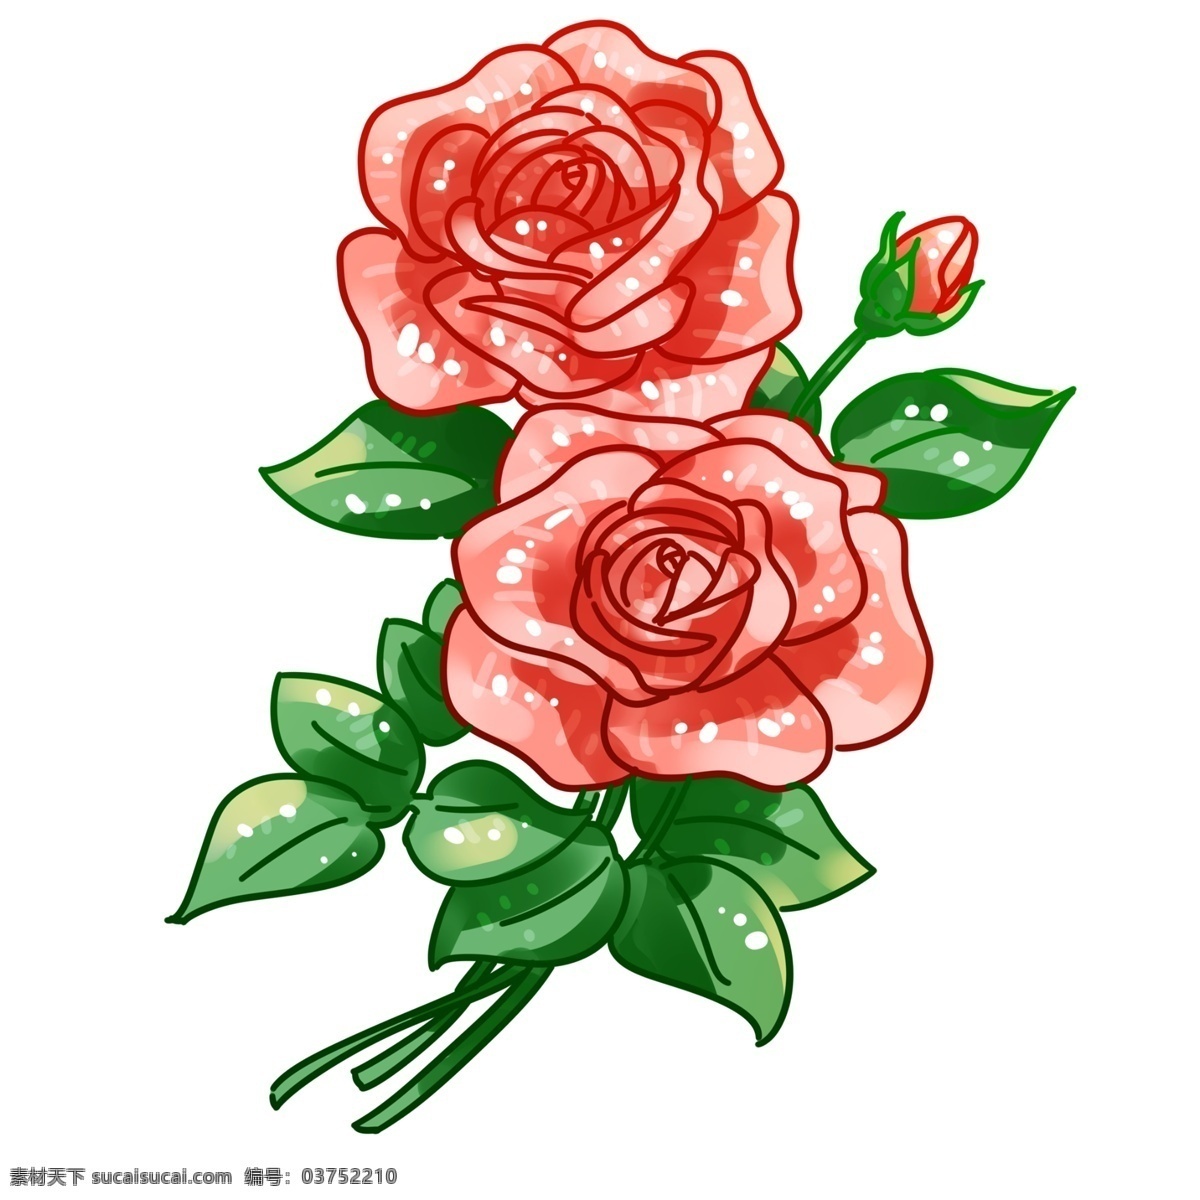 两 朵 粉色 玫瑰花 元素 红色 红玫瑰 粉玫瑰 花骨朵